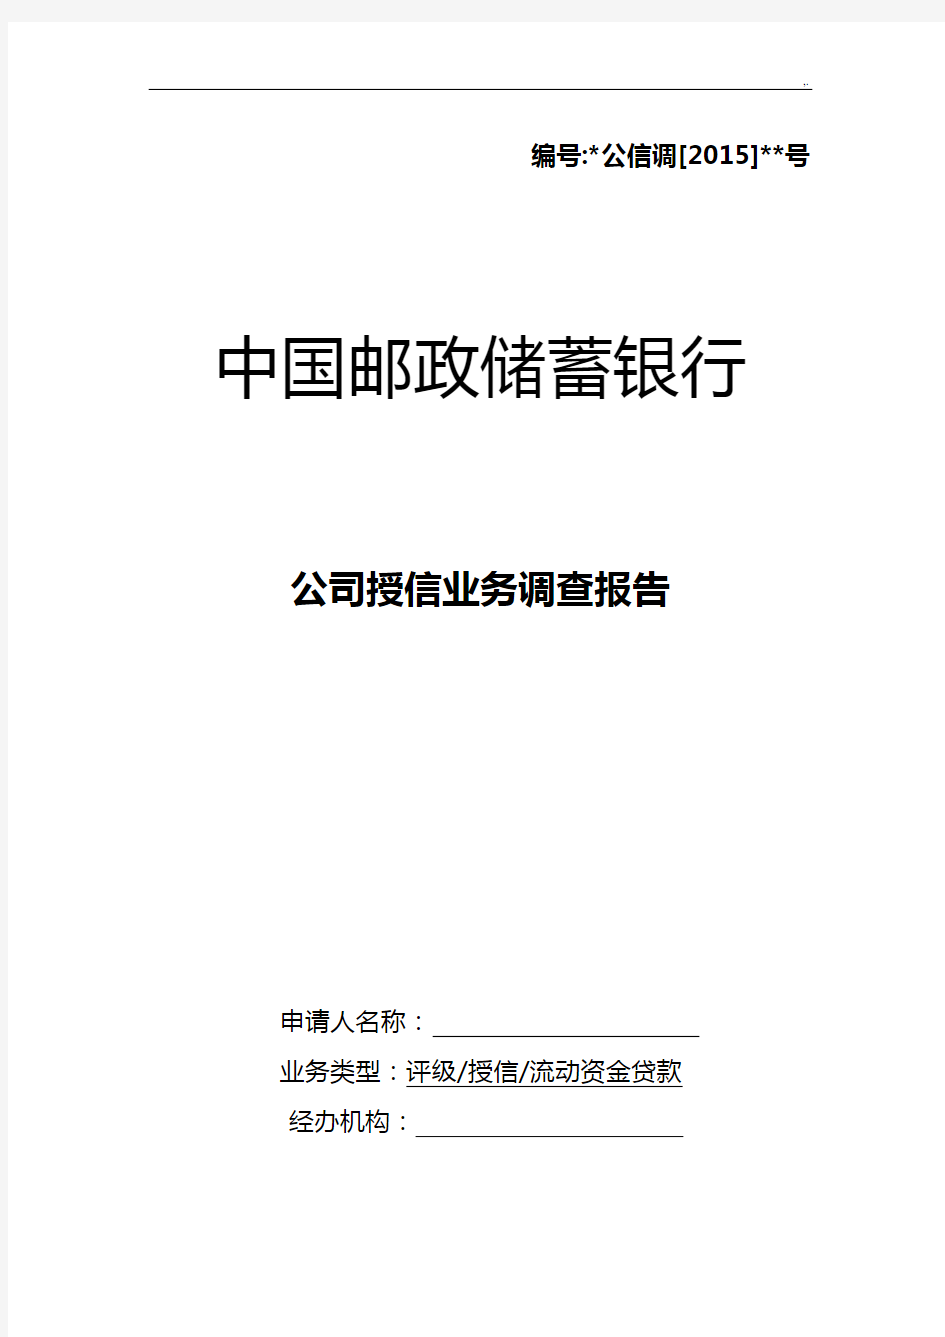 中国邮政储蓄银行集团公司授信业务调查报告(2015年度版)流动资金(三流合一)